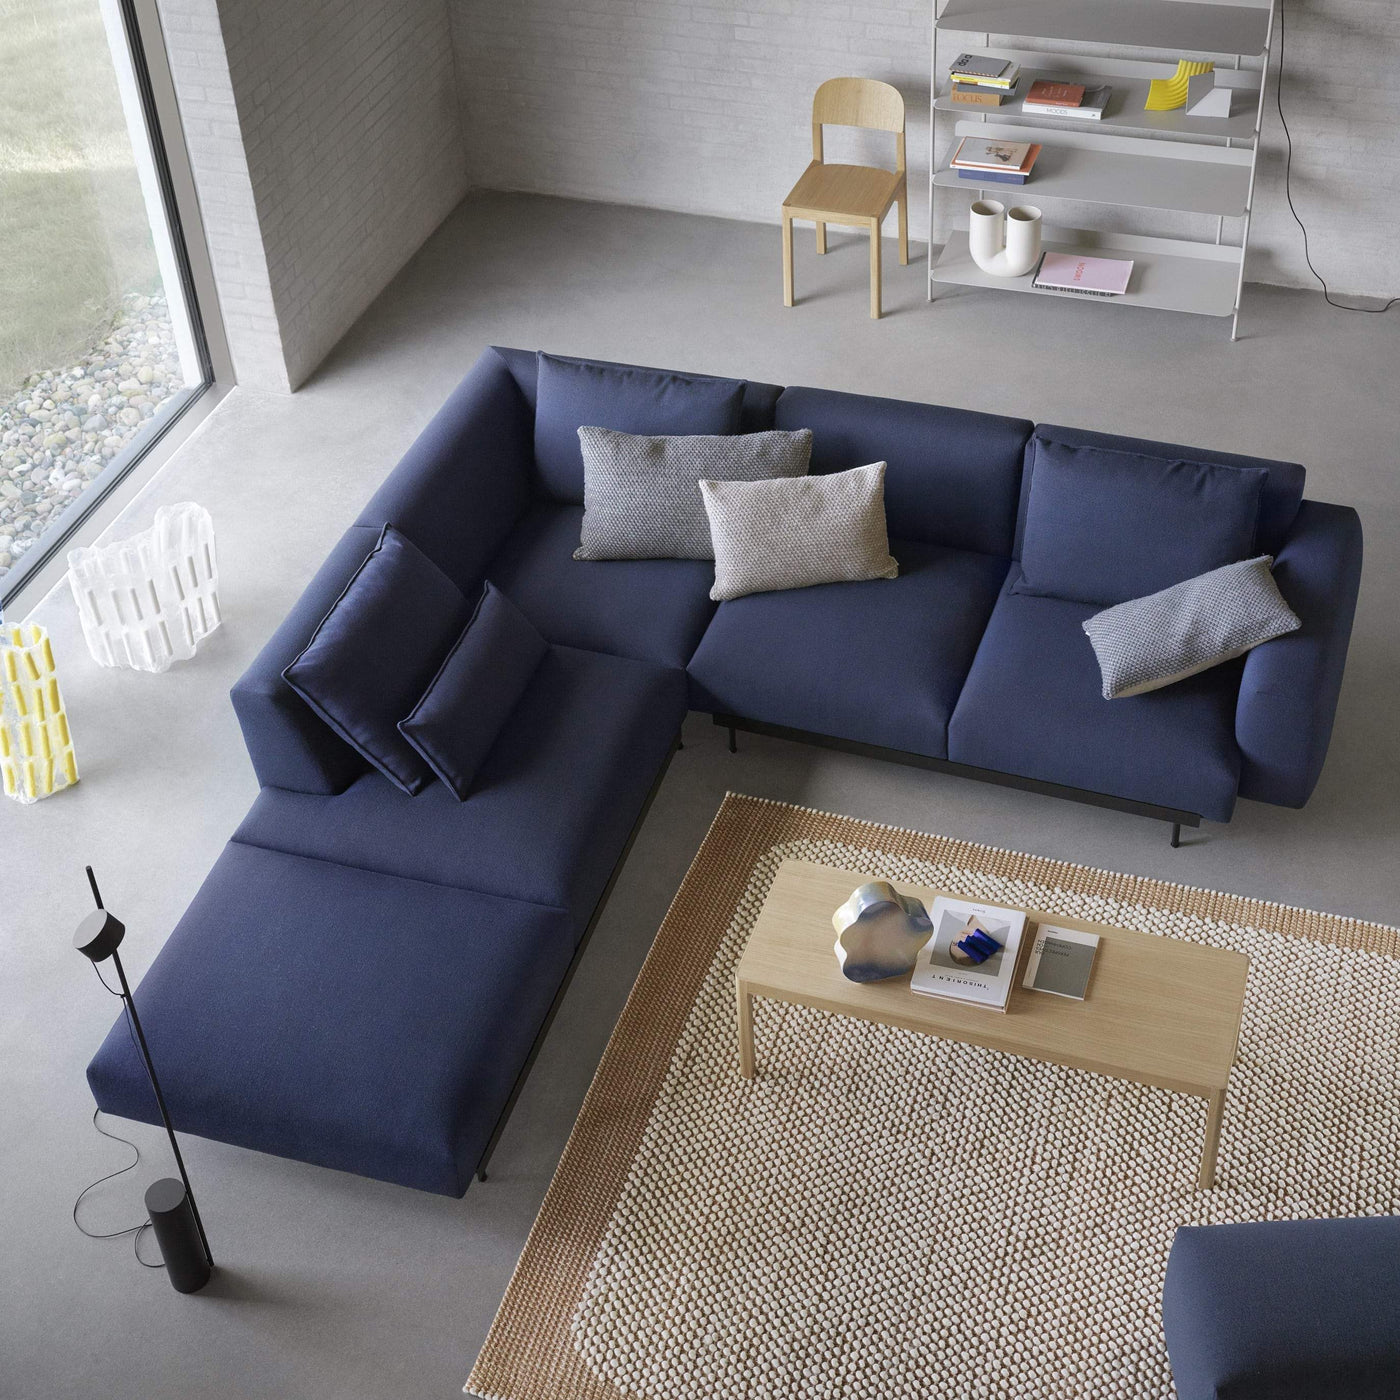 Muuto In Situ Modular Sofa in Vidar 554 blue fabric. Made to order at someday designs. #colour_vidar-554